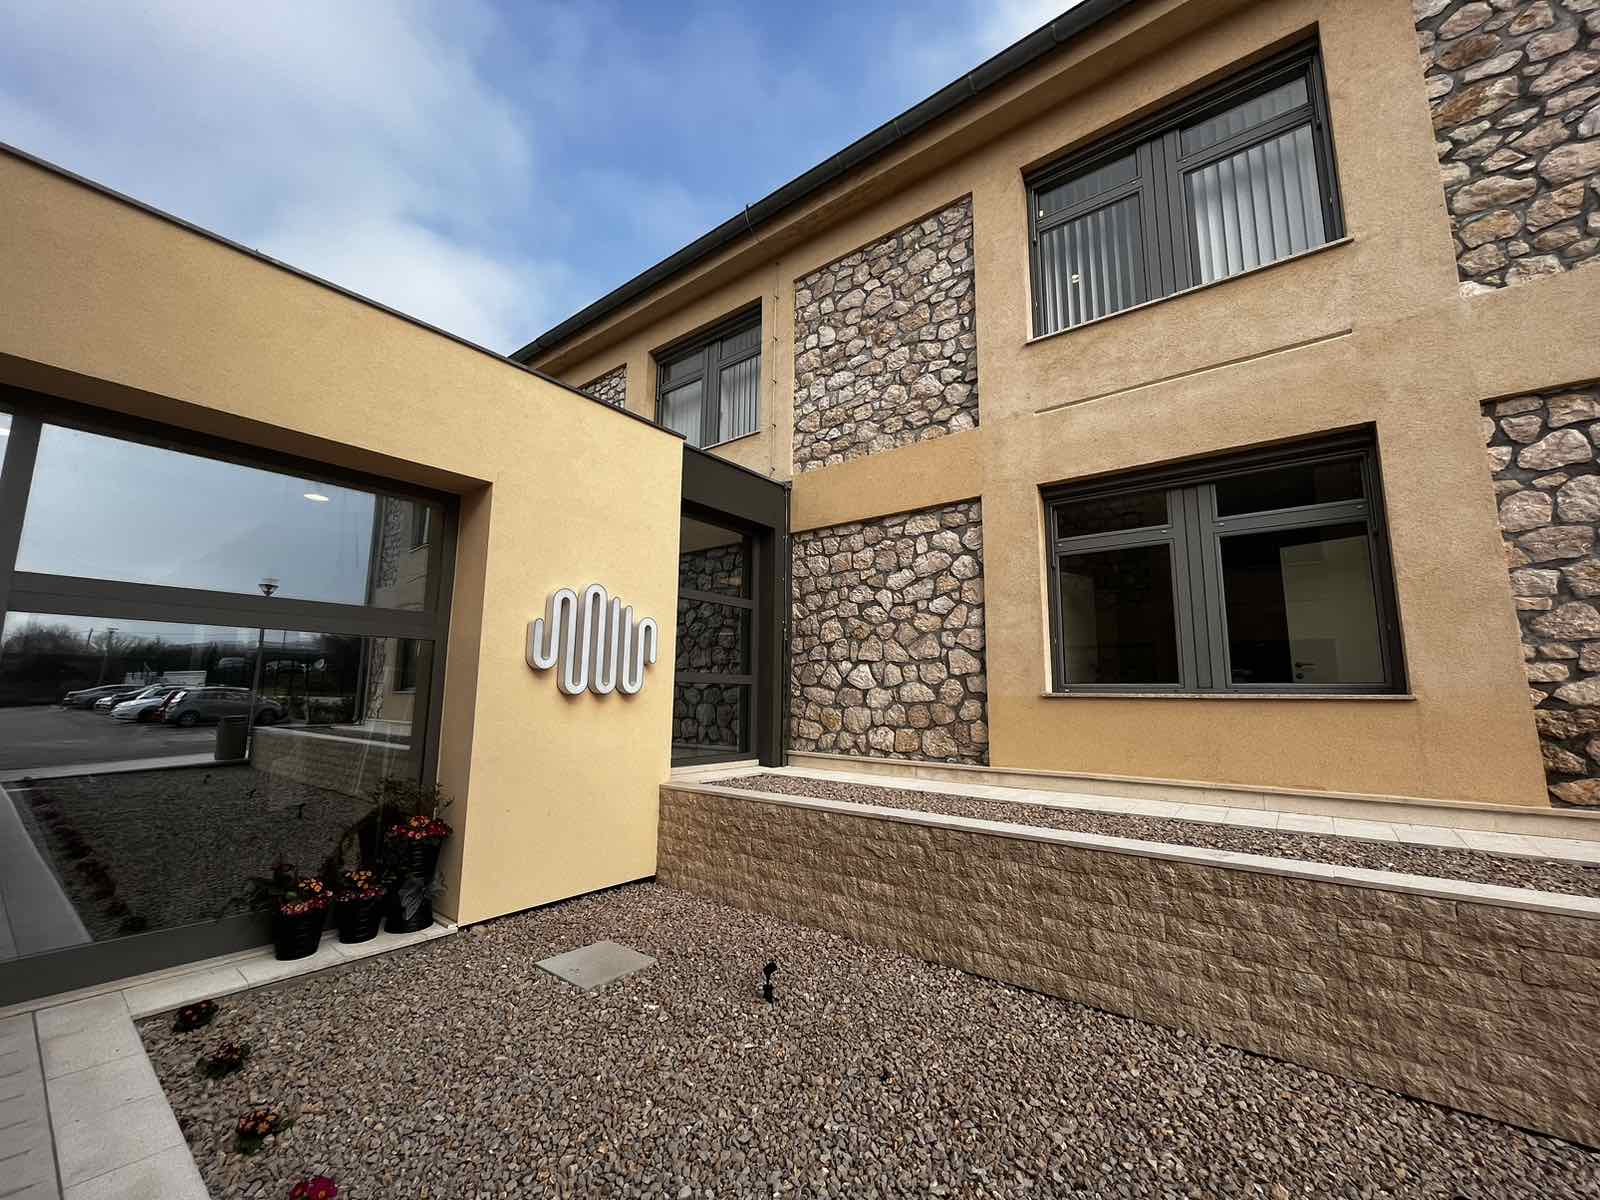 Specijalna bolnica Insula na Rabu: Otvoren novouređeni bolnički paviljon